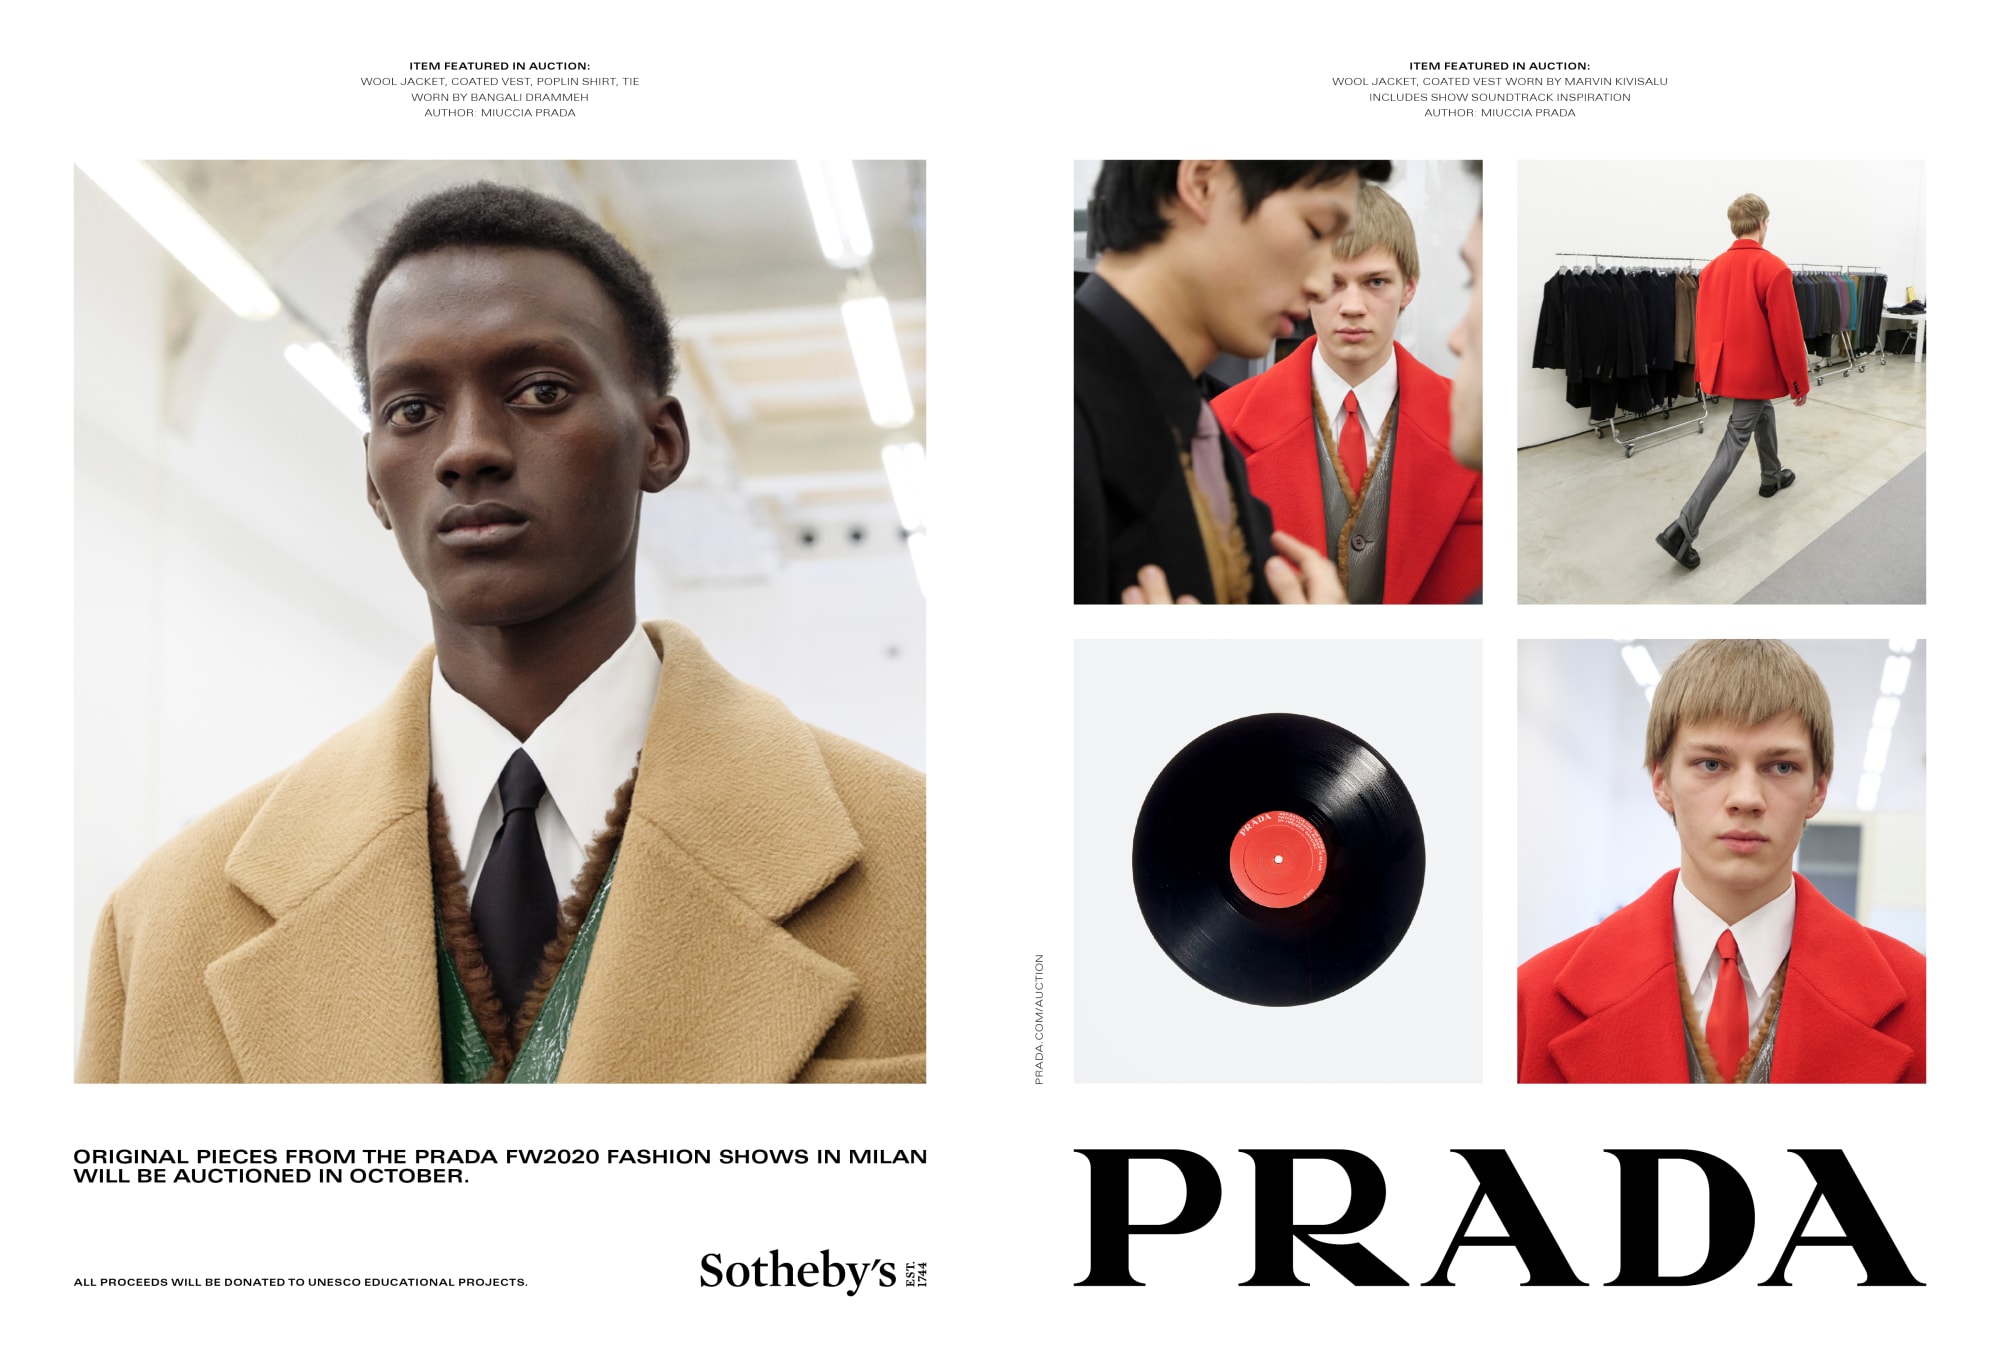 Prada и Sotheby’s проведут благотворительный аукцион. Среди лотов — ткани и приглашения 